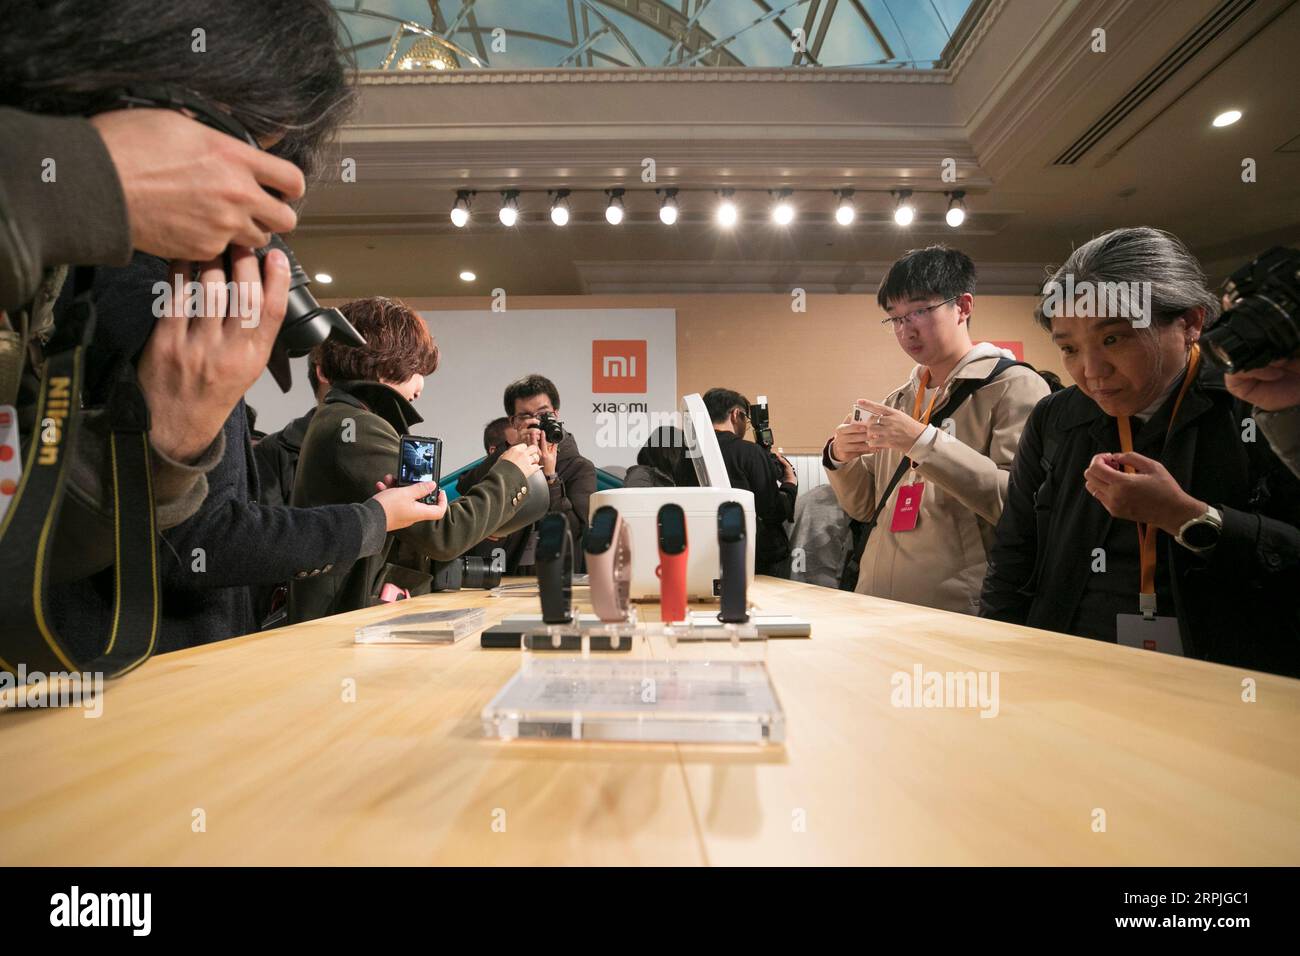 191209 -- TOKYO, 9 dicembre 2019 -- giornalisti e visitatori sperimentano i prodotti di Xiaomi durante la sua cerimonia di lancio a Tokyo, in Giappone, 9 dicembre 2019. La società tecnologica cinese Xiaomi ha annunciato lunedì che sarebbe entrato nel mercato giapponese con il suo ultimo smartphone di punta mi Note 10 a Tokyo, in Giappone. GIAPPONE-TOKYO-XIAOMI-CERIMONIA-LANCIO-SMARTPHONE DUXXIAOYI PUBLICATIONXNOTXINXCHN Foto Stock